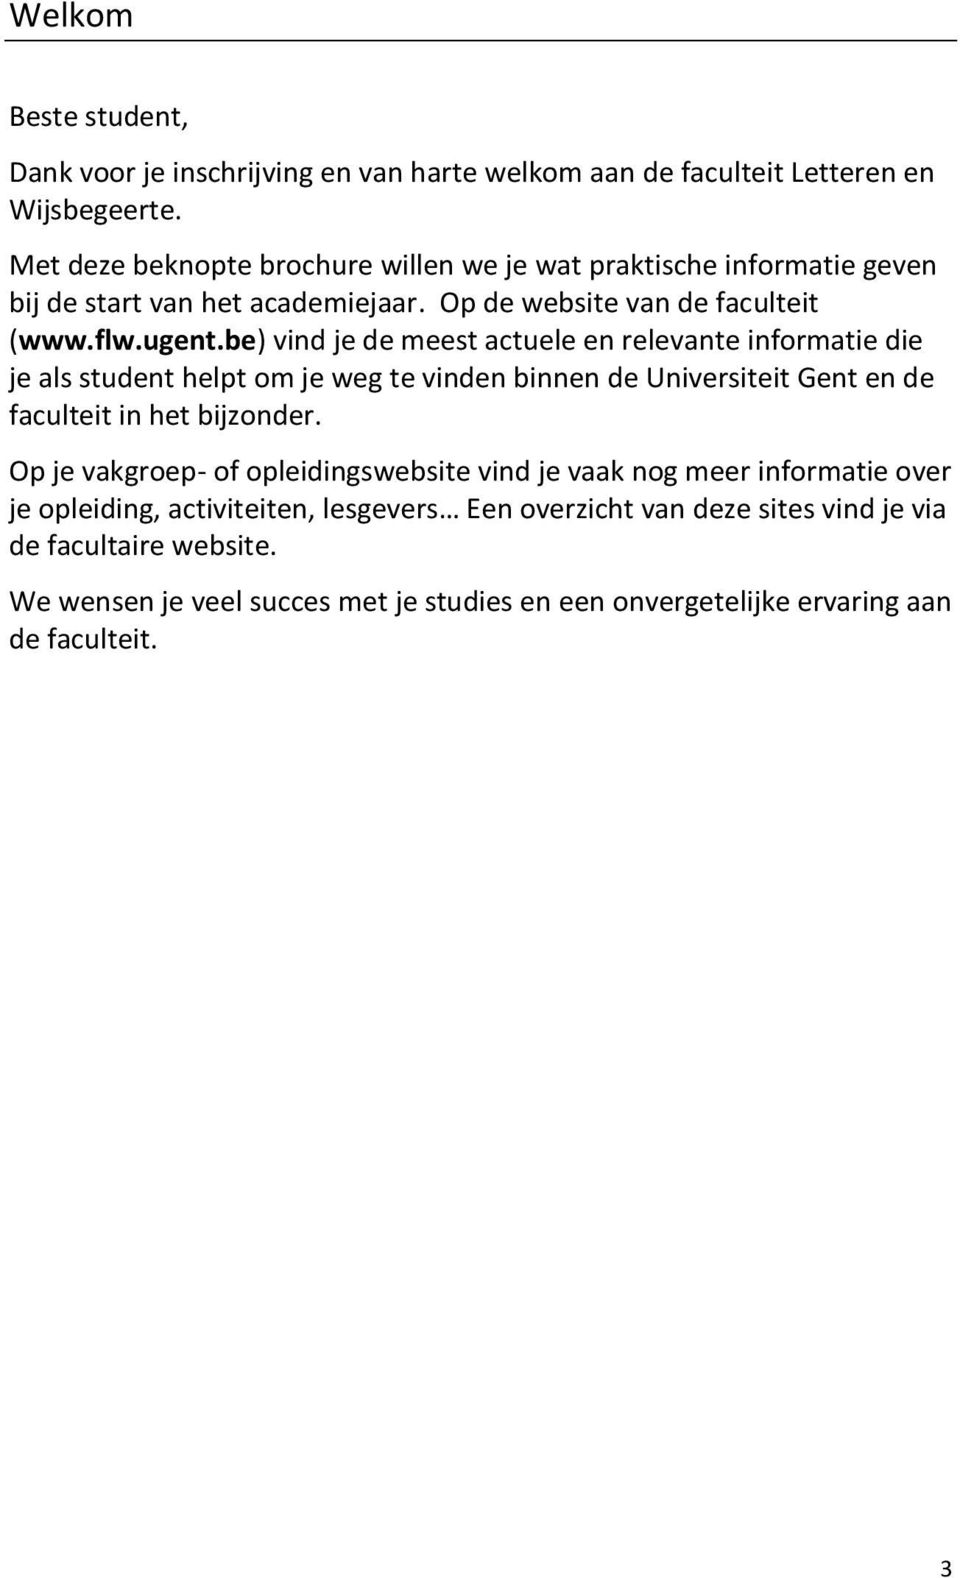 be) vind je de meest actuele en relevante informatie die je als student helpt om je weg te vinden binnen de Universiteit Gent en de faculteit in het bijzonder.